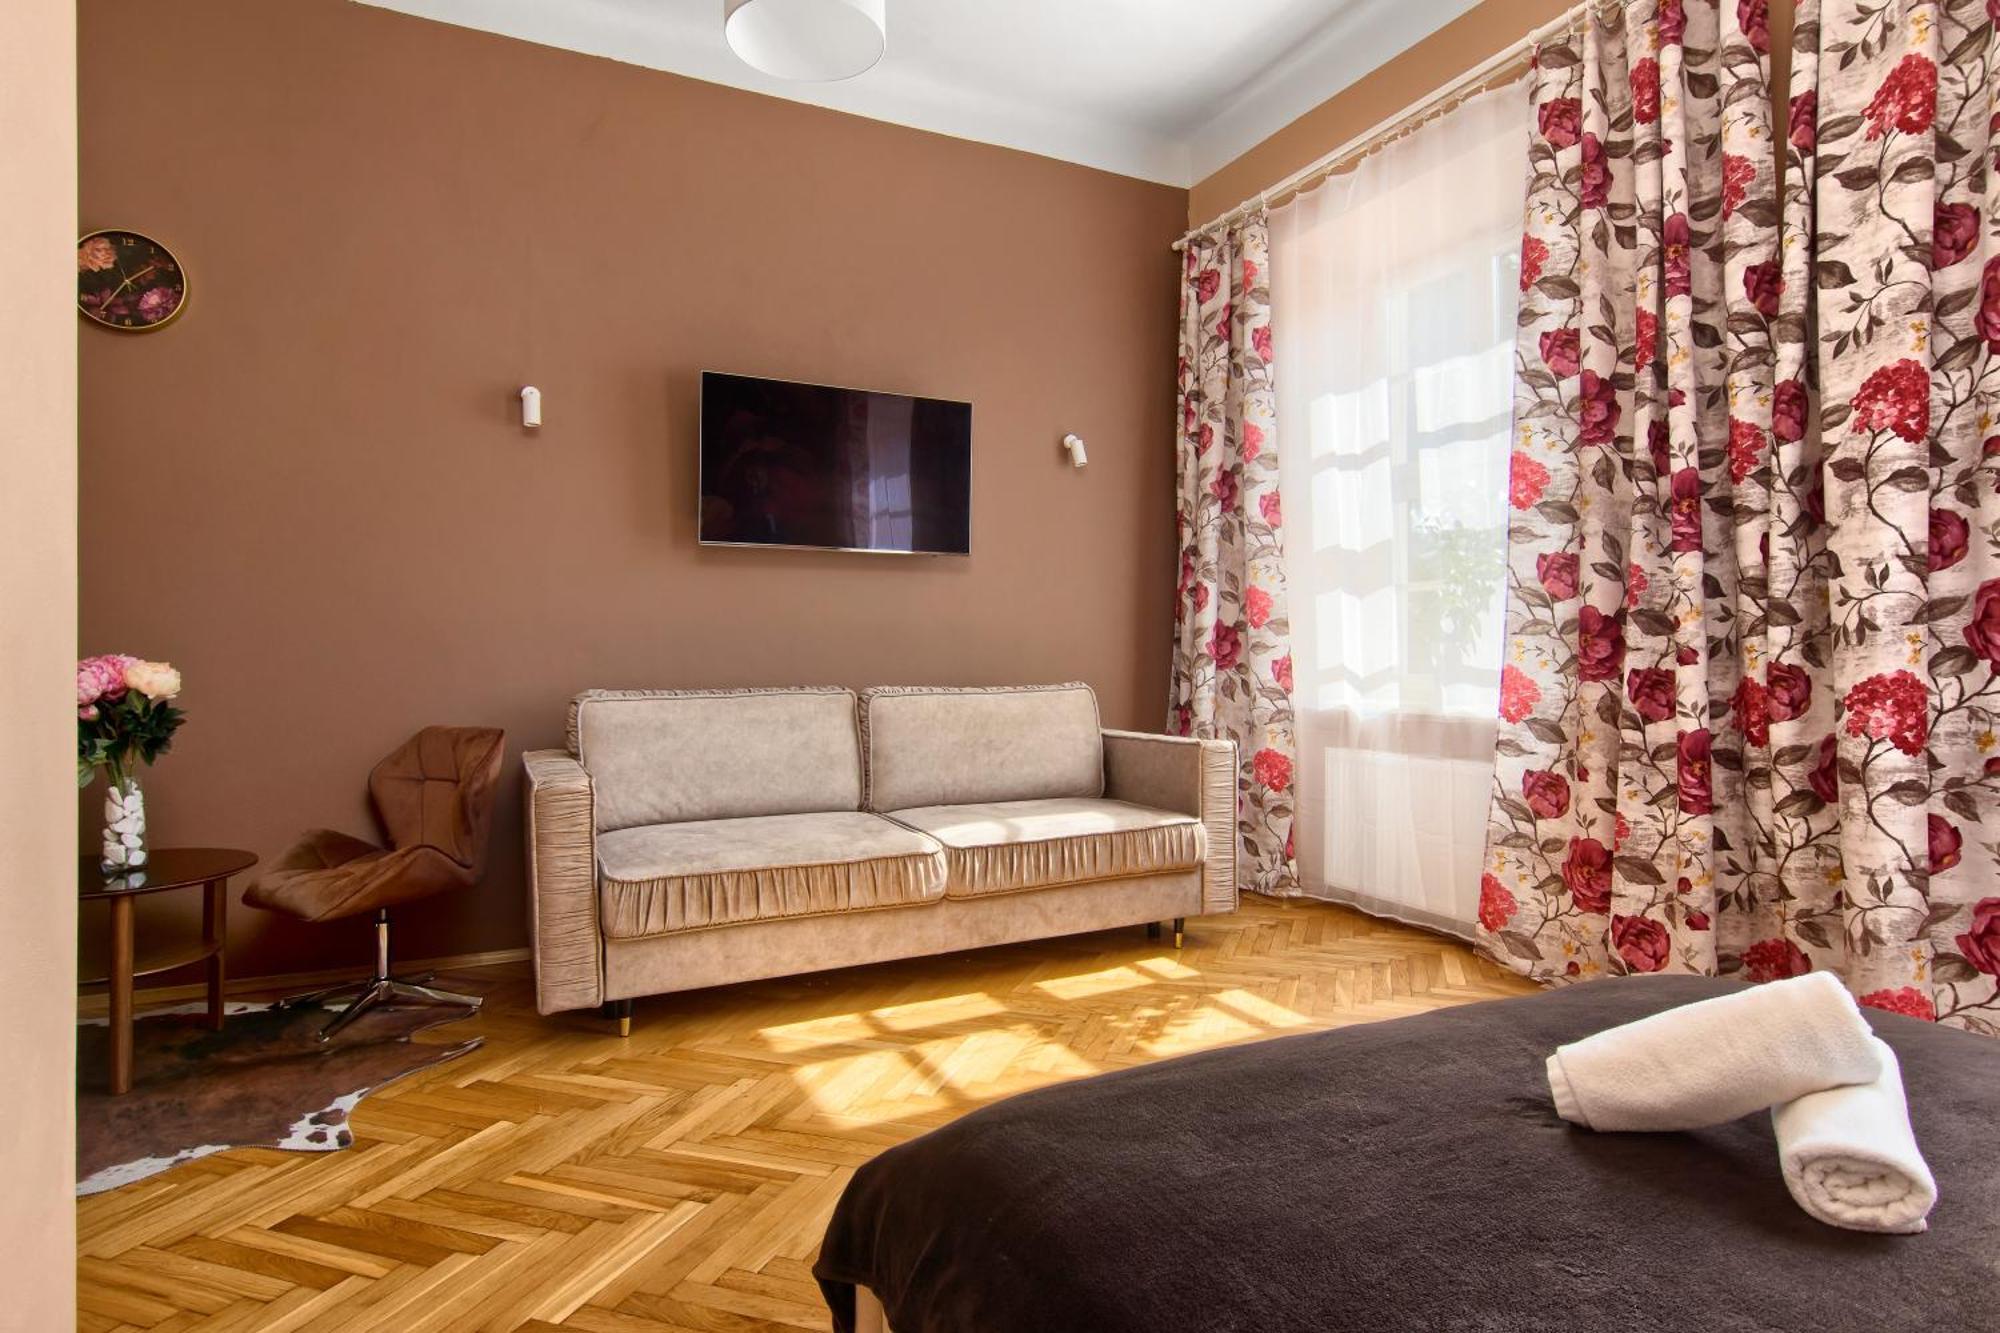 קרקוב Mikolajska 5 Apartments מראה חיצוני תמונה